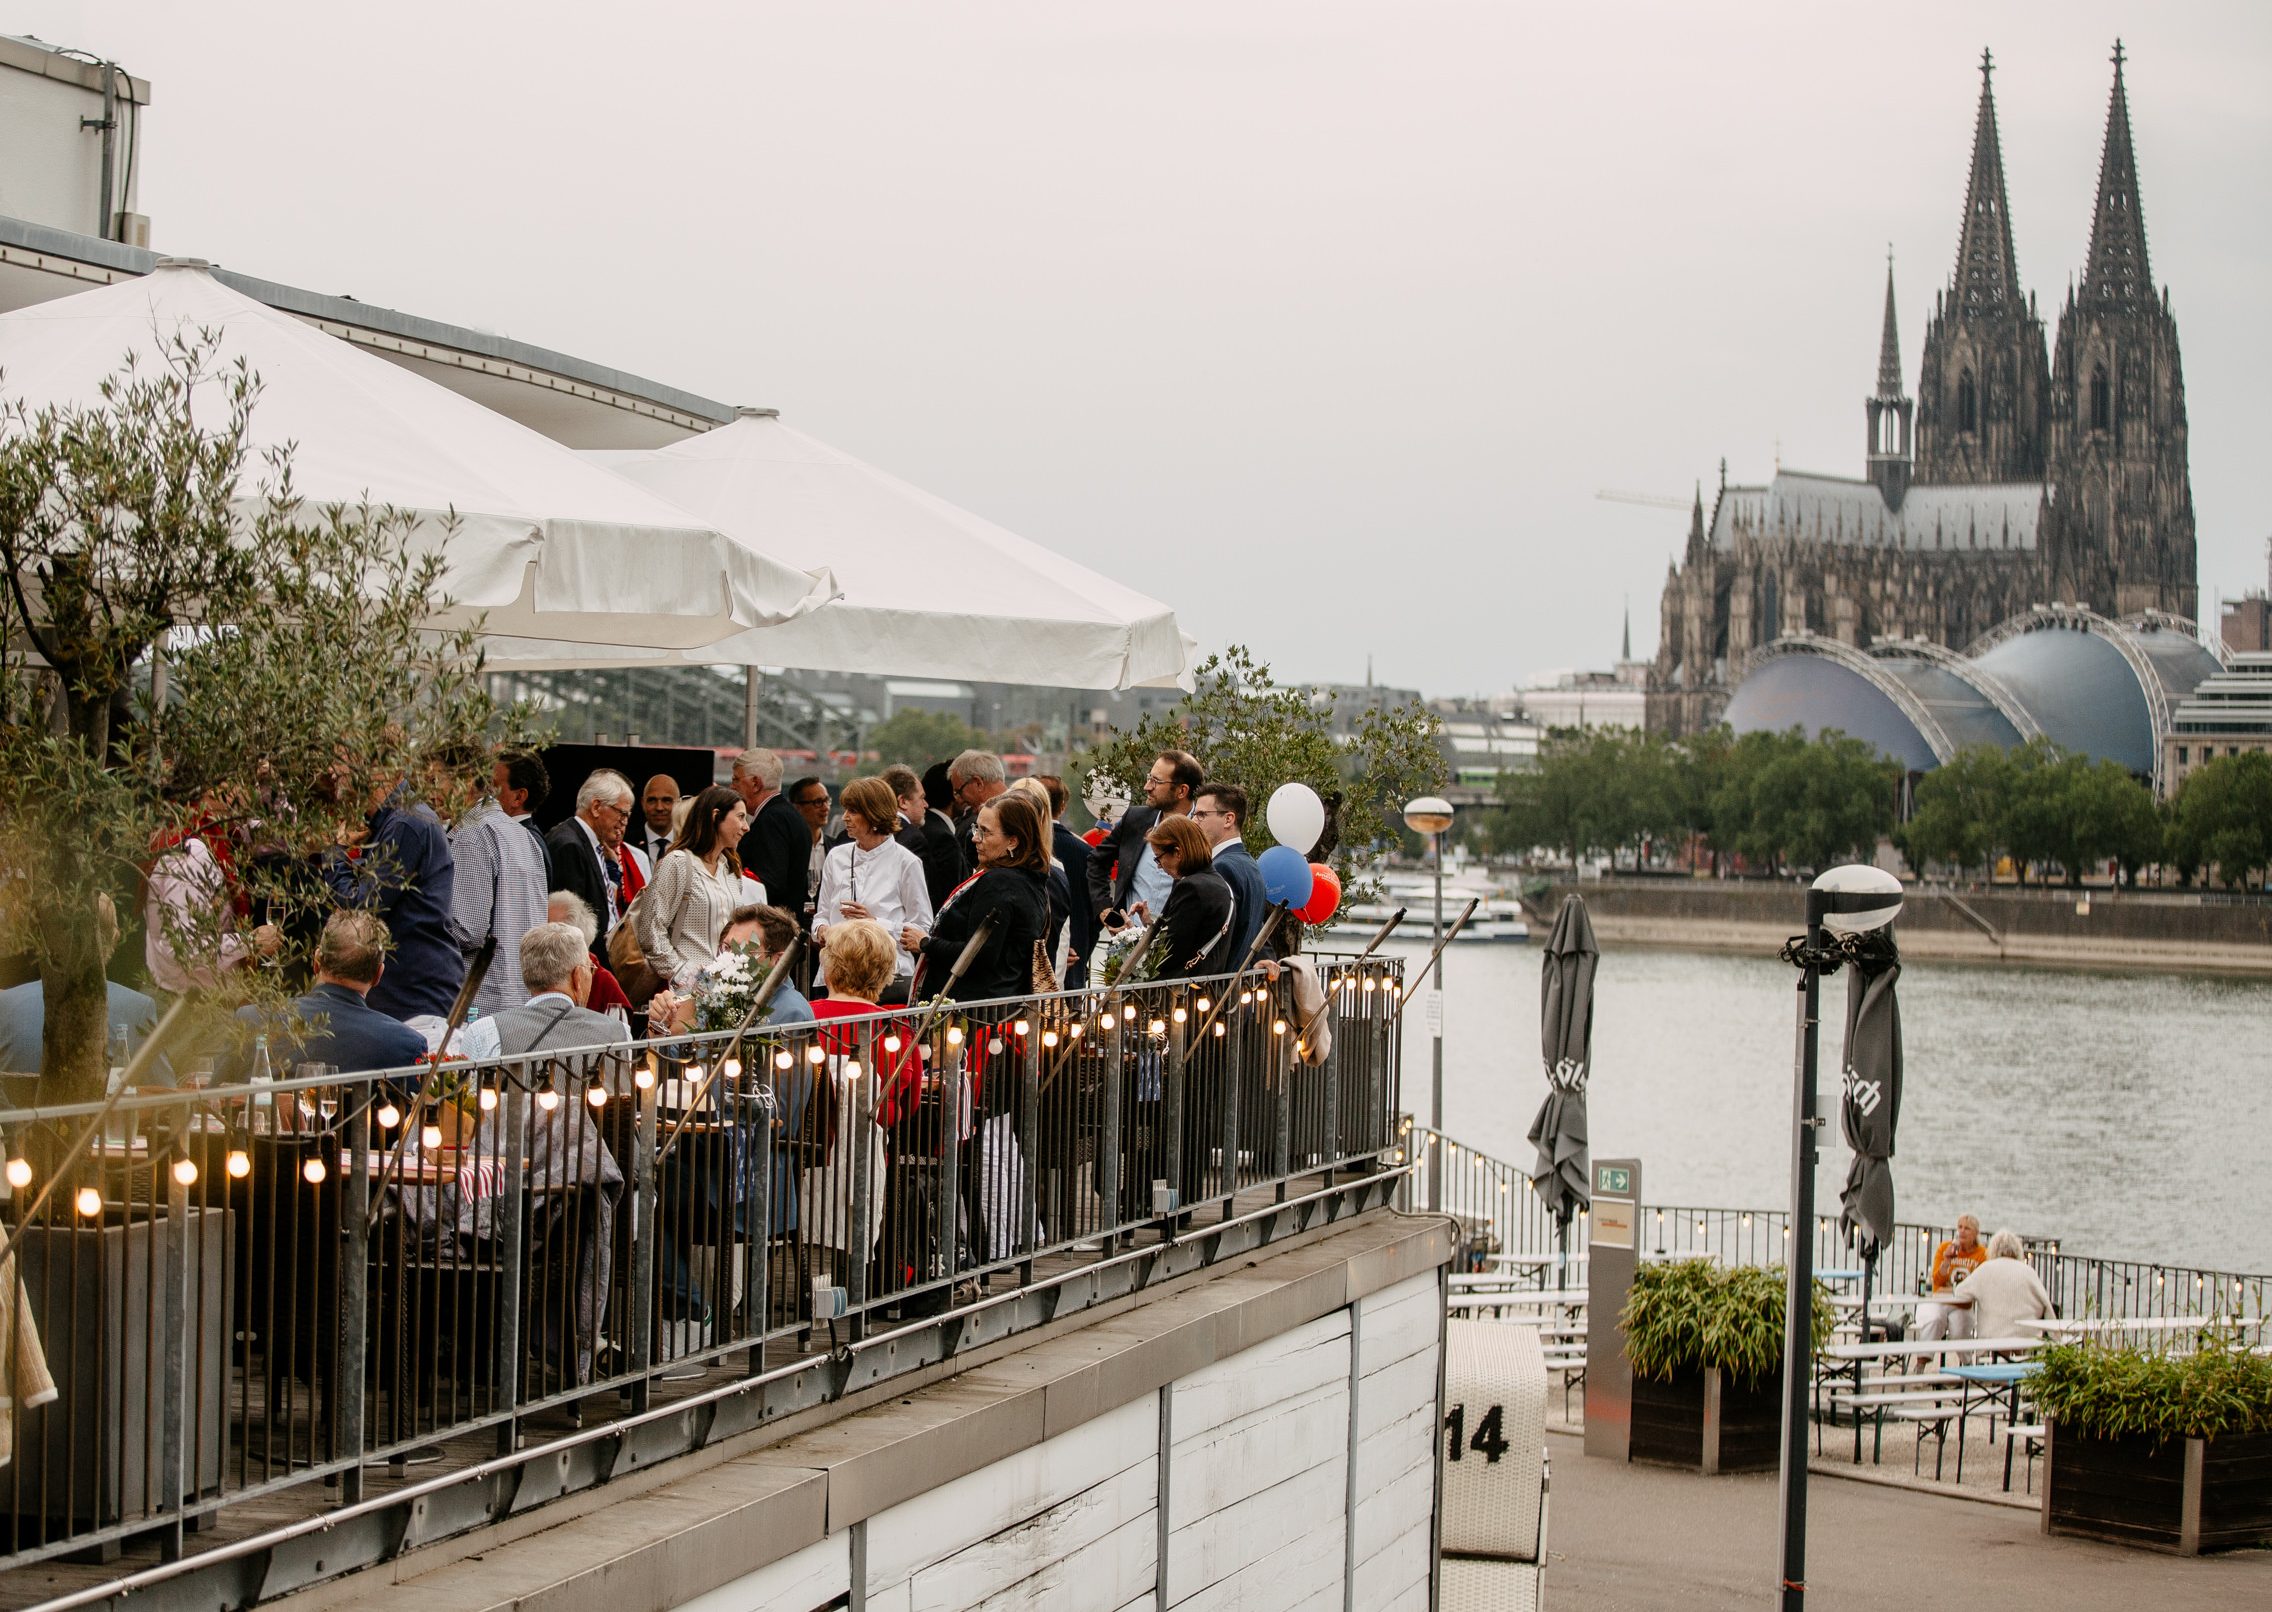 Auf der linken Bildhälfte steht eine Menschenmenge auf einer Terrasse. In der rechten Bildhälfte sieht man den Rhein und den Kölner Dom.